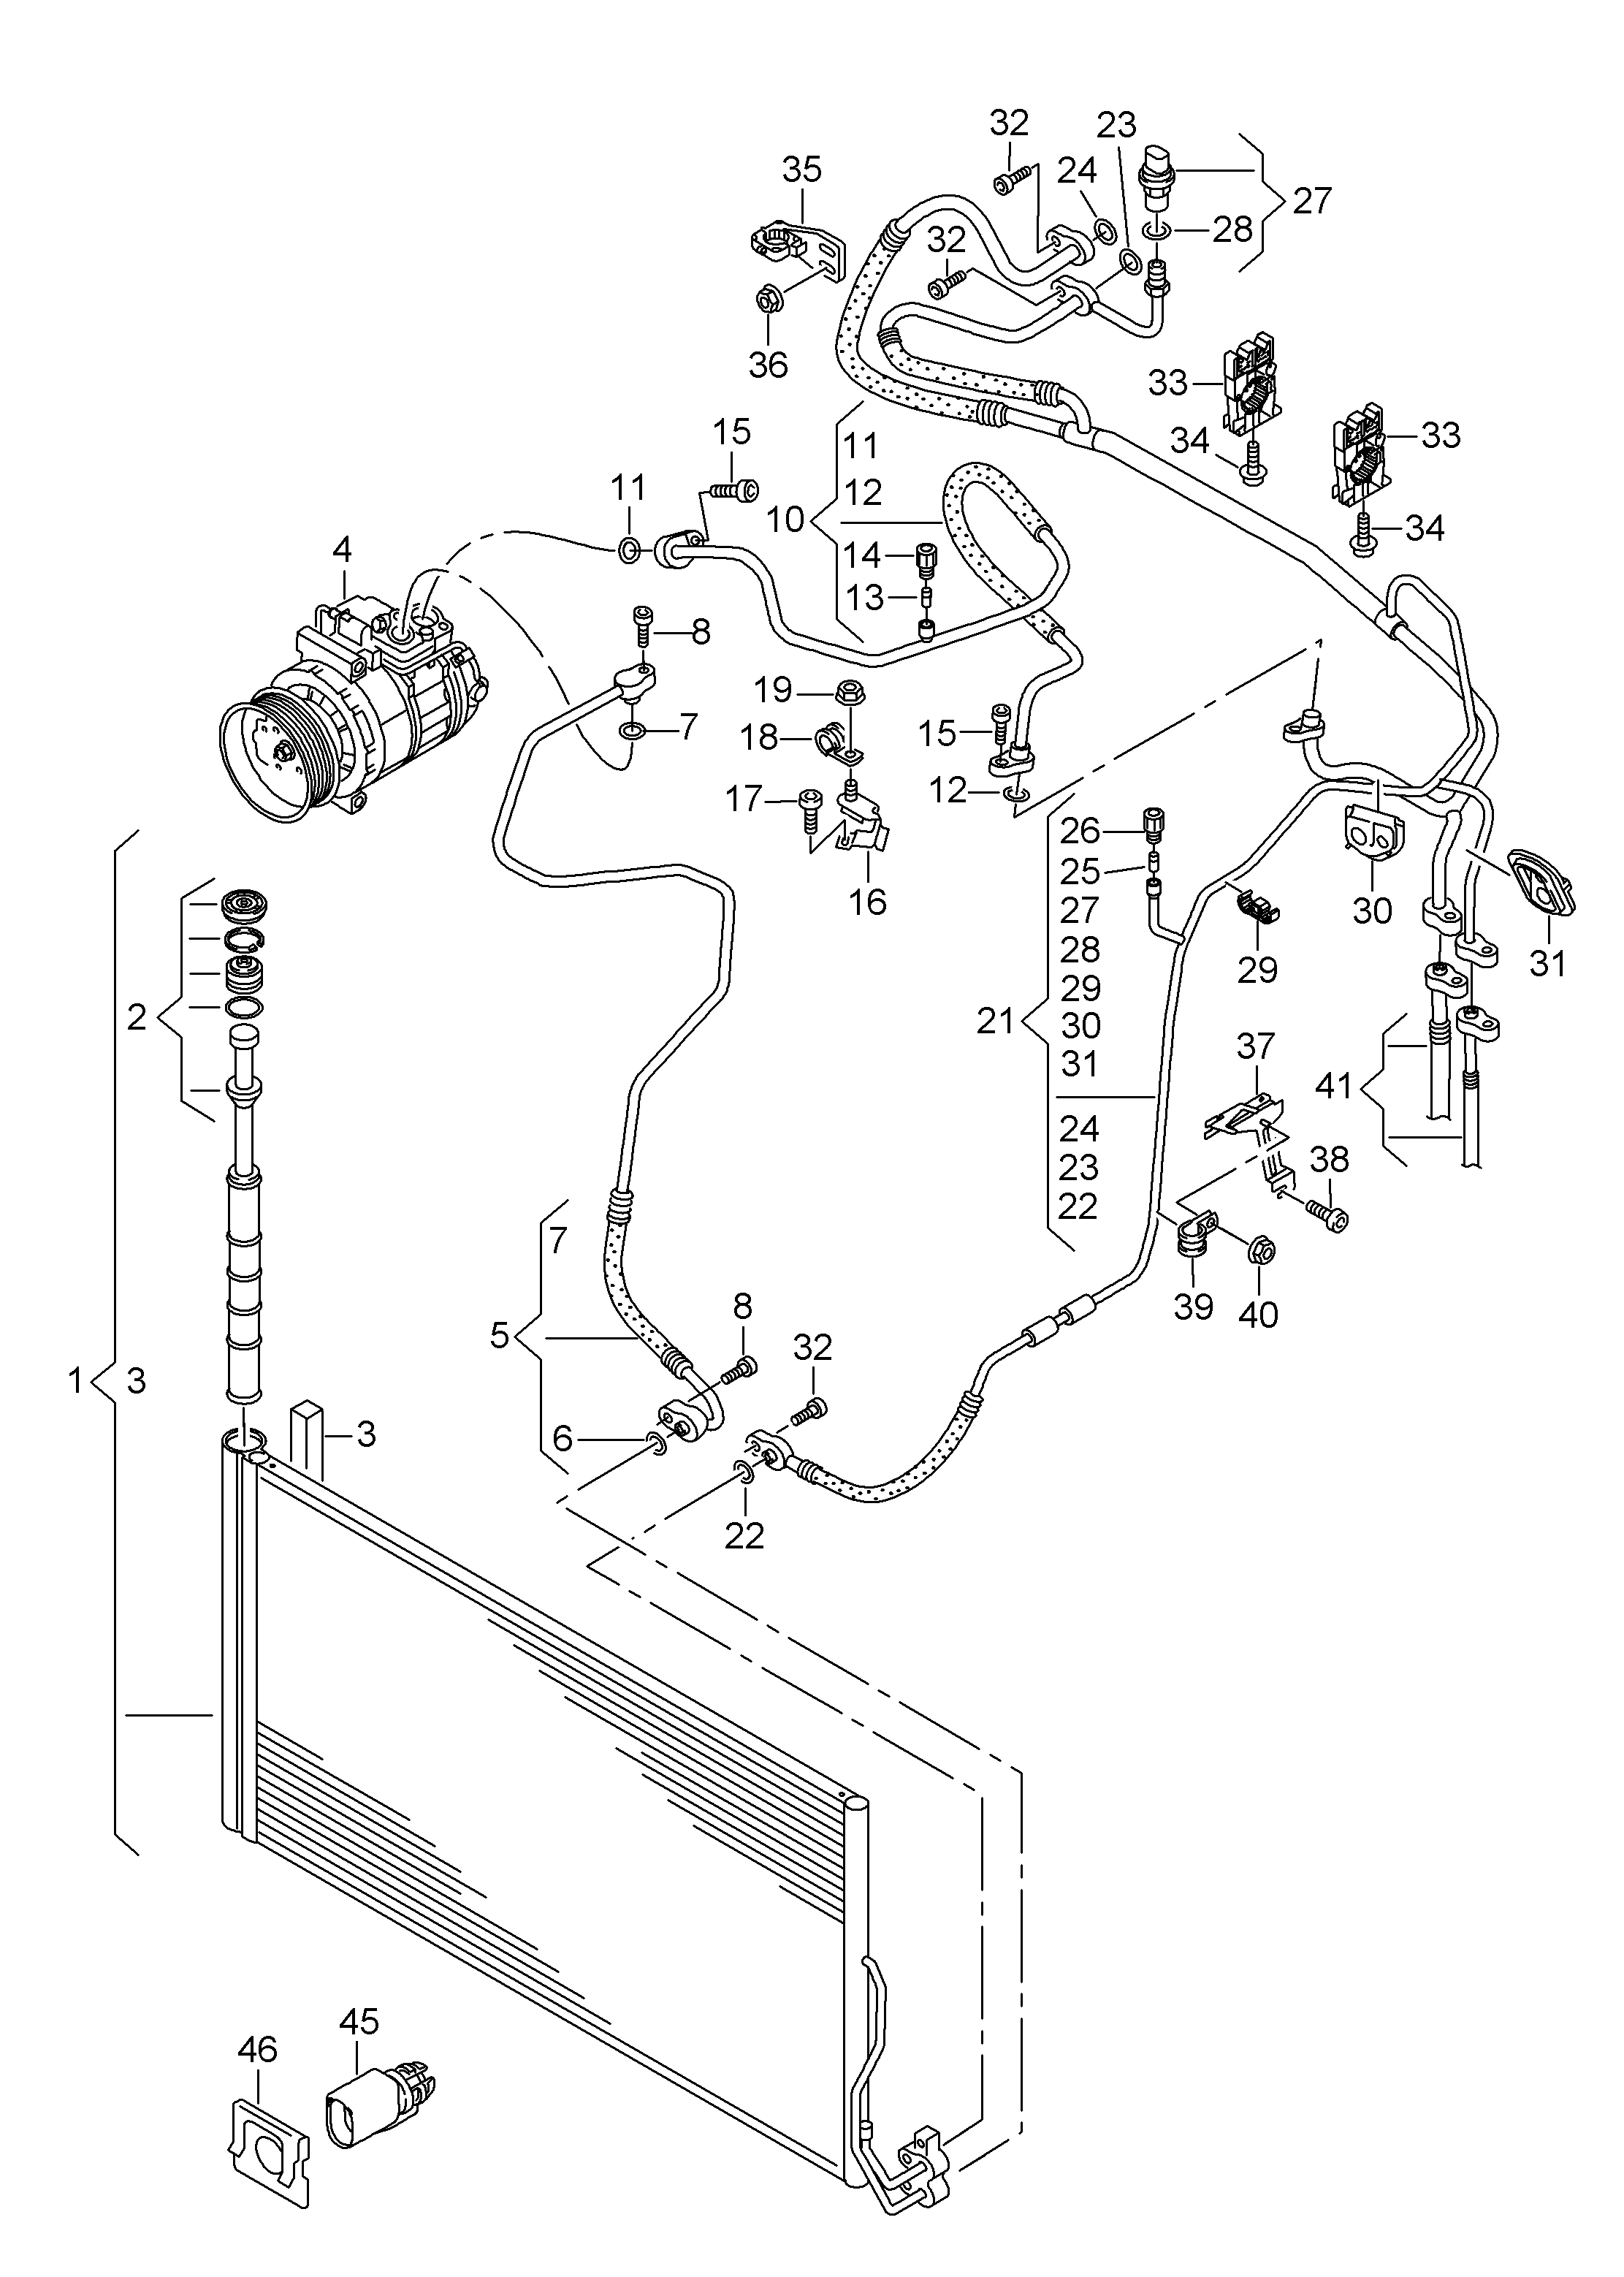 制冷剂循环系统; 空调冷凝器及
干燥器 - Touareg(TOUA)  